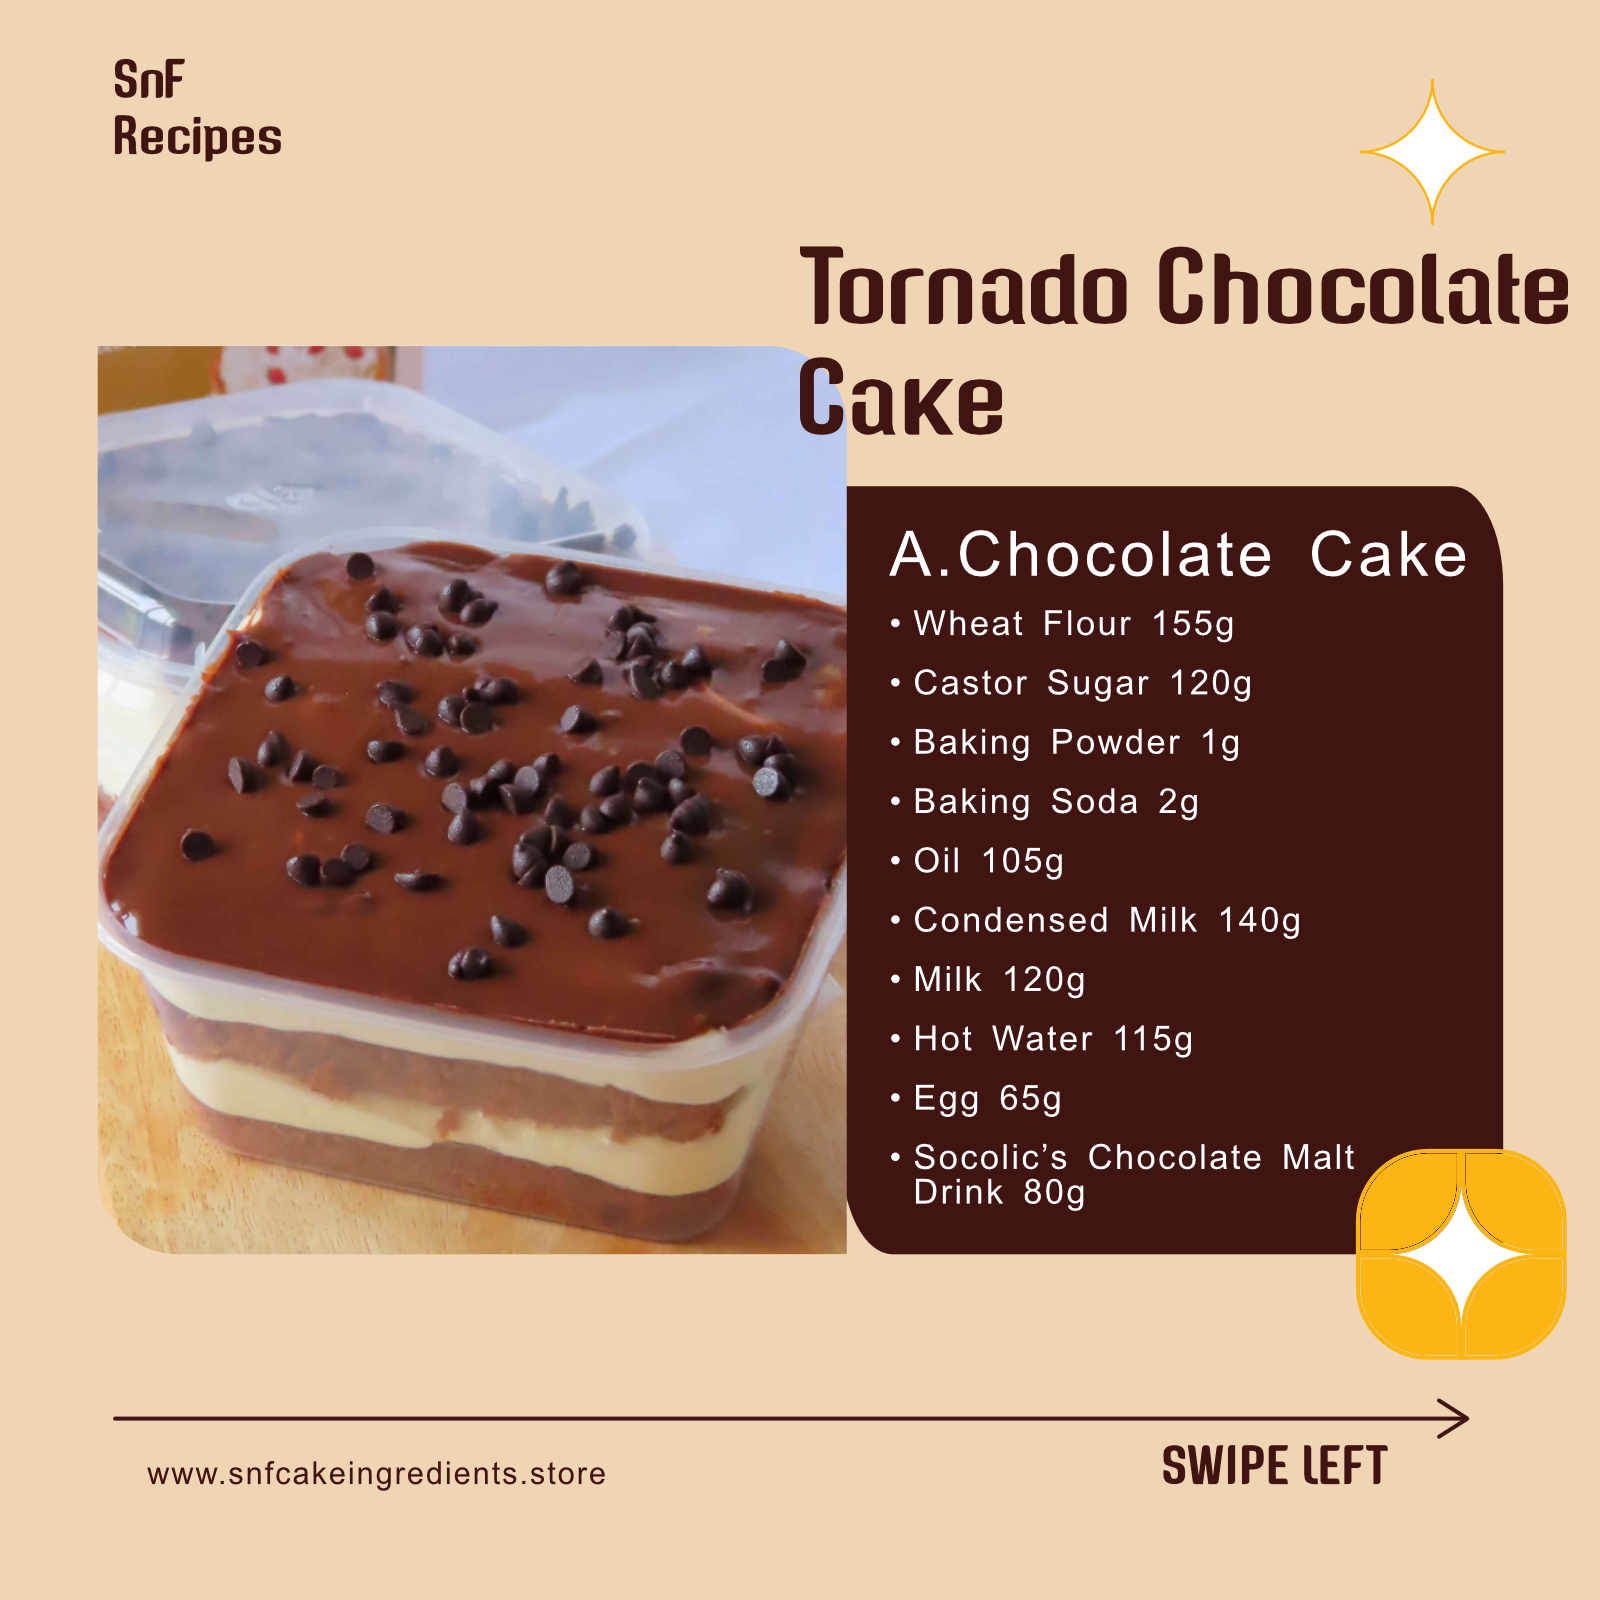 Tornado Chocolate Cake